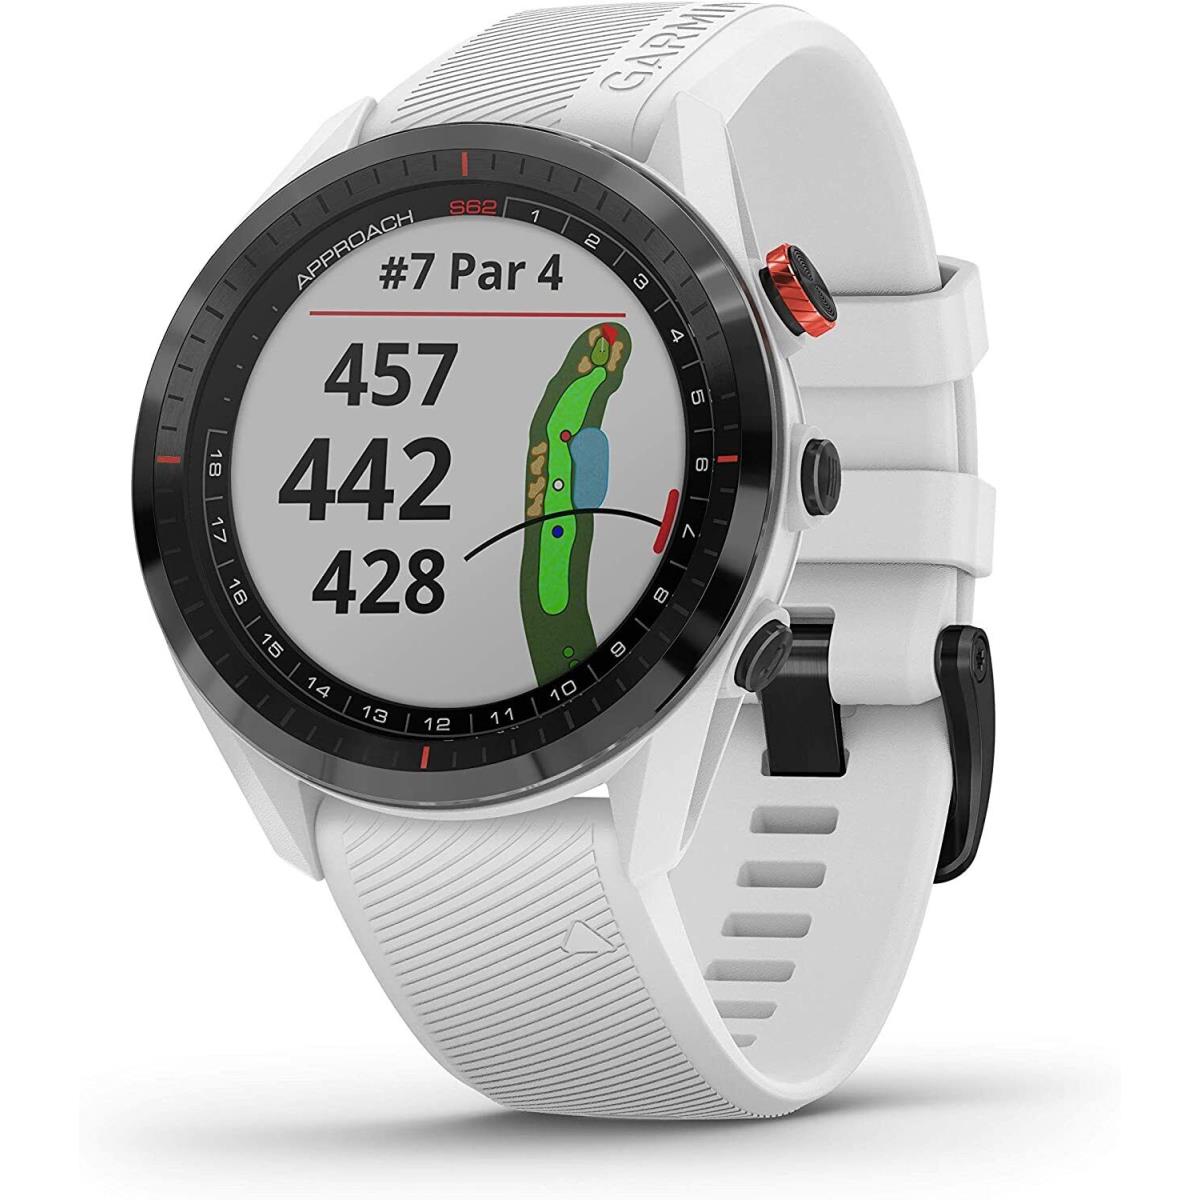 Garmin Approach S62 Premium Golf Gps Watch White